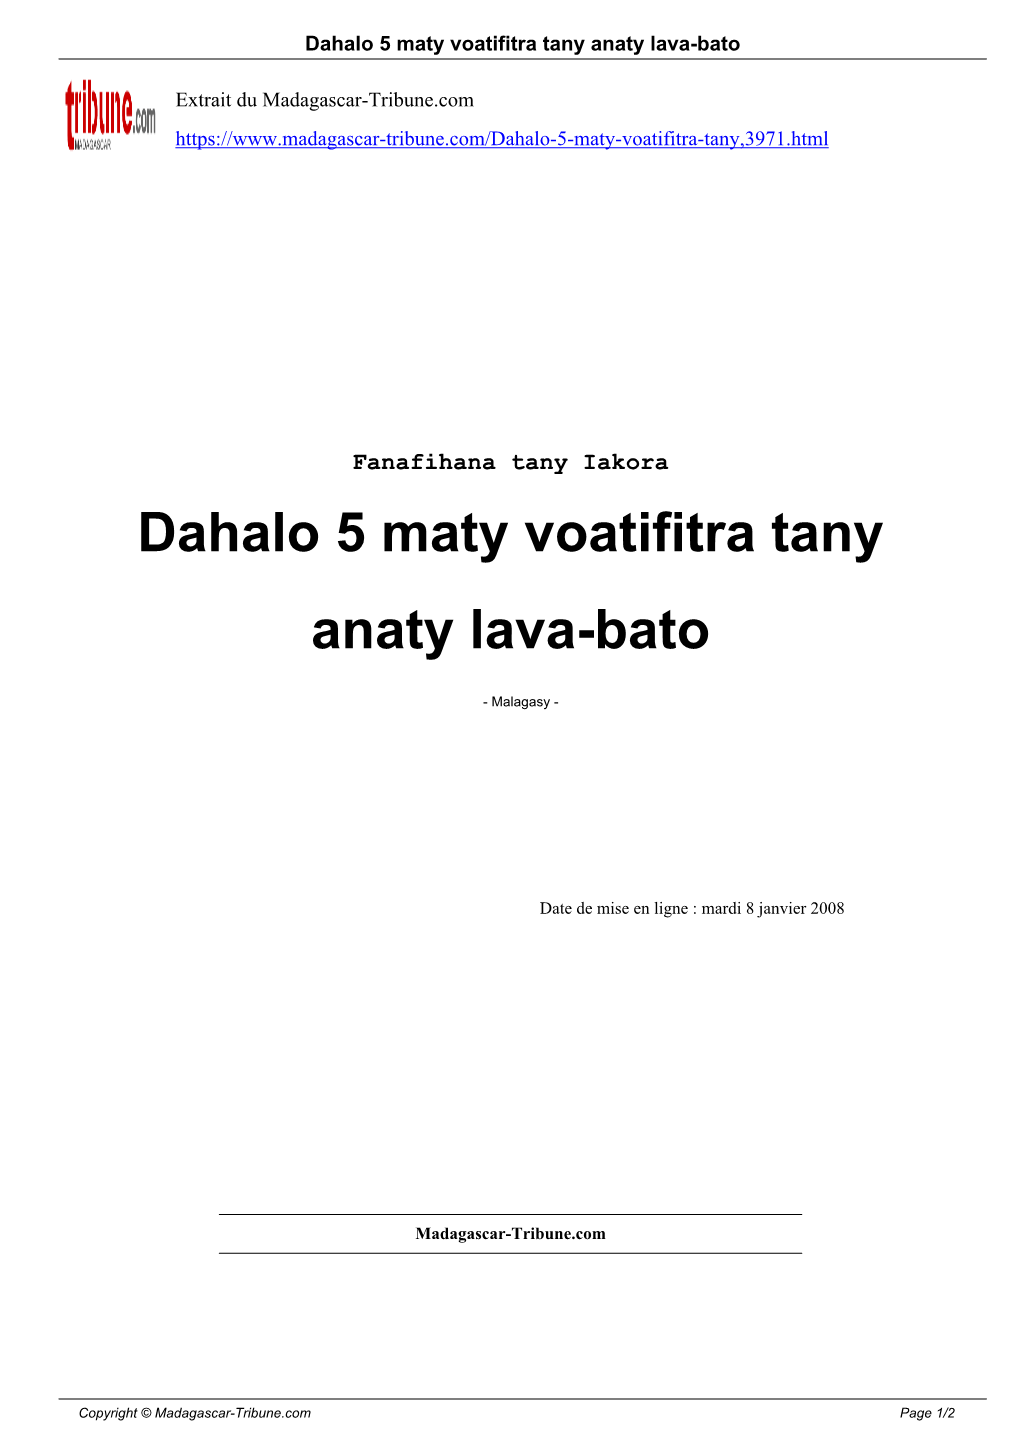 Dahalo 5 Maty Voatifitra Tany Anaty Lava-Bato